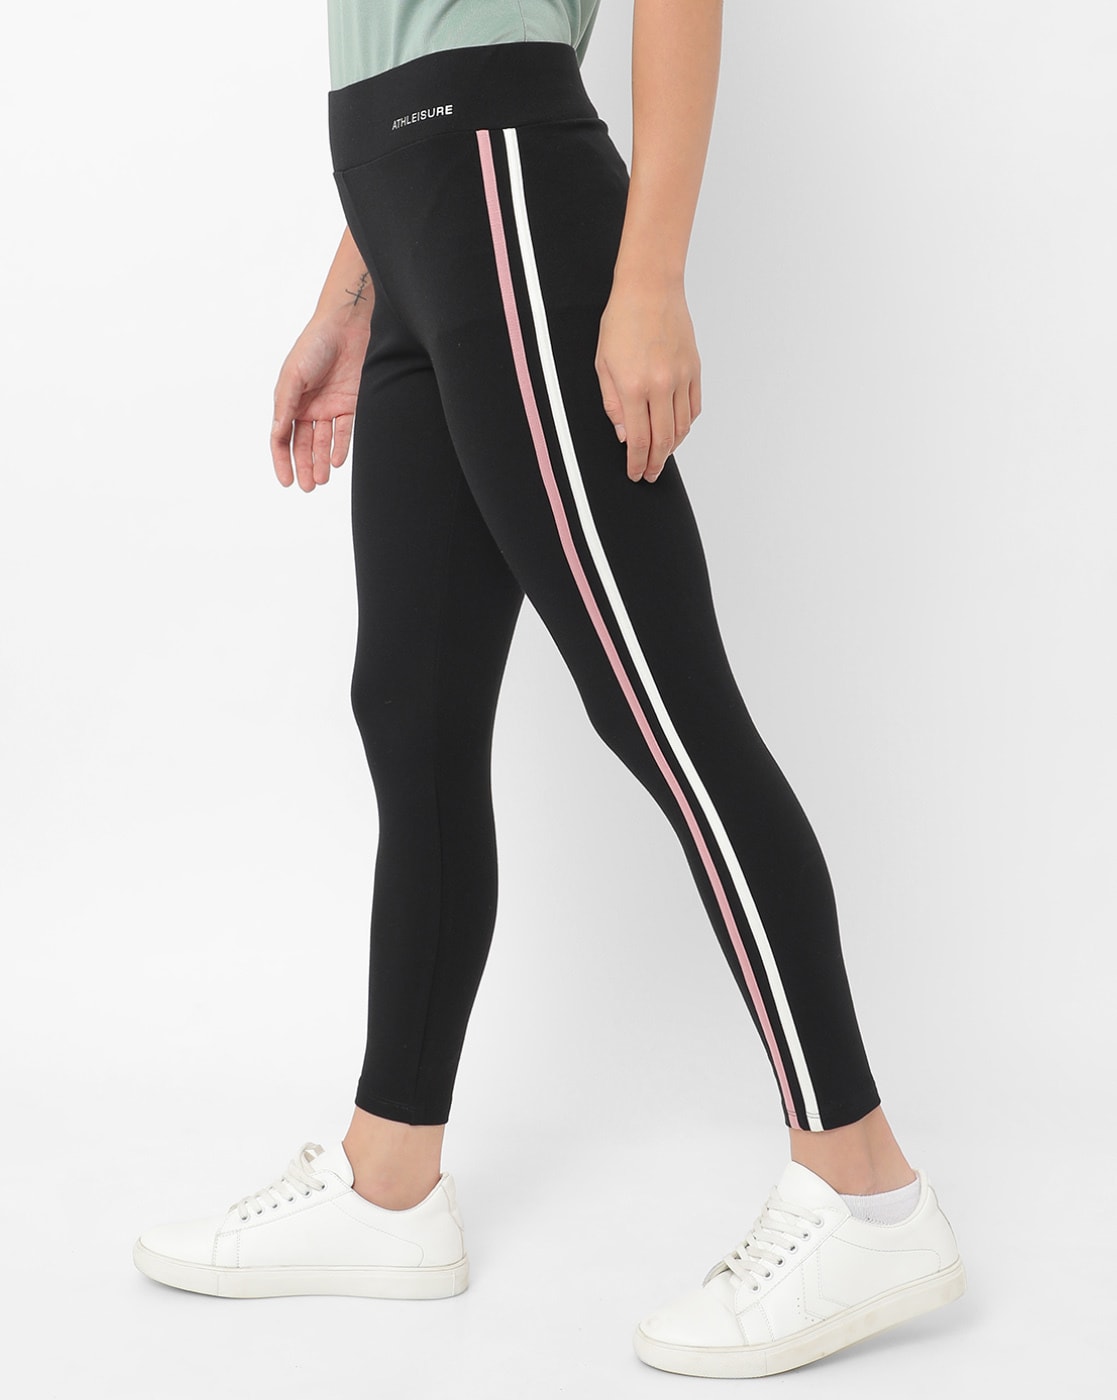 Airbrush High-Waist Streamlined Legging - Black/White | White pants women,  Legging, Black leggings